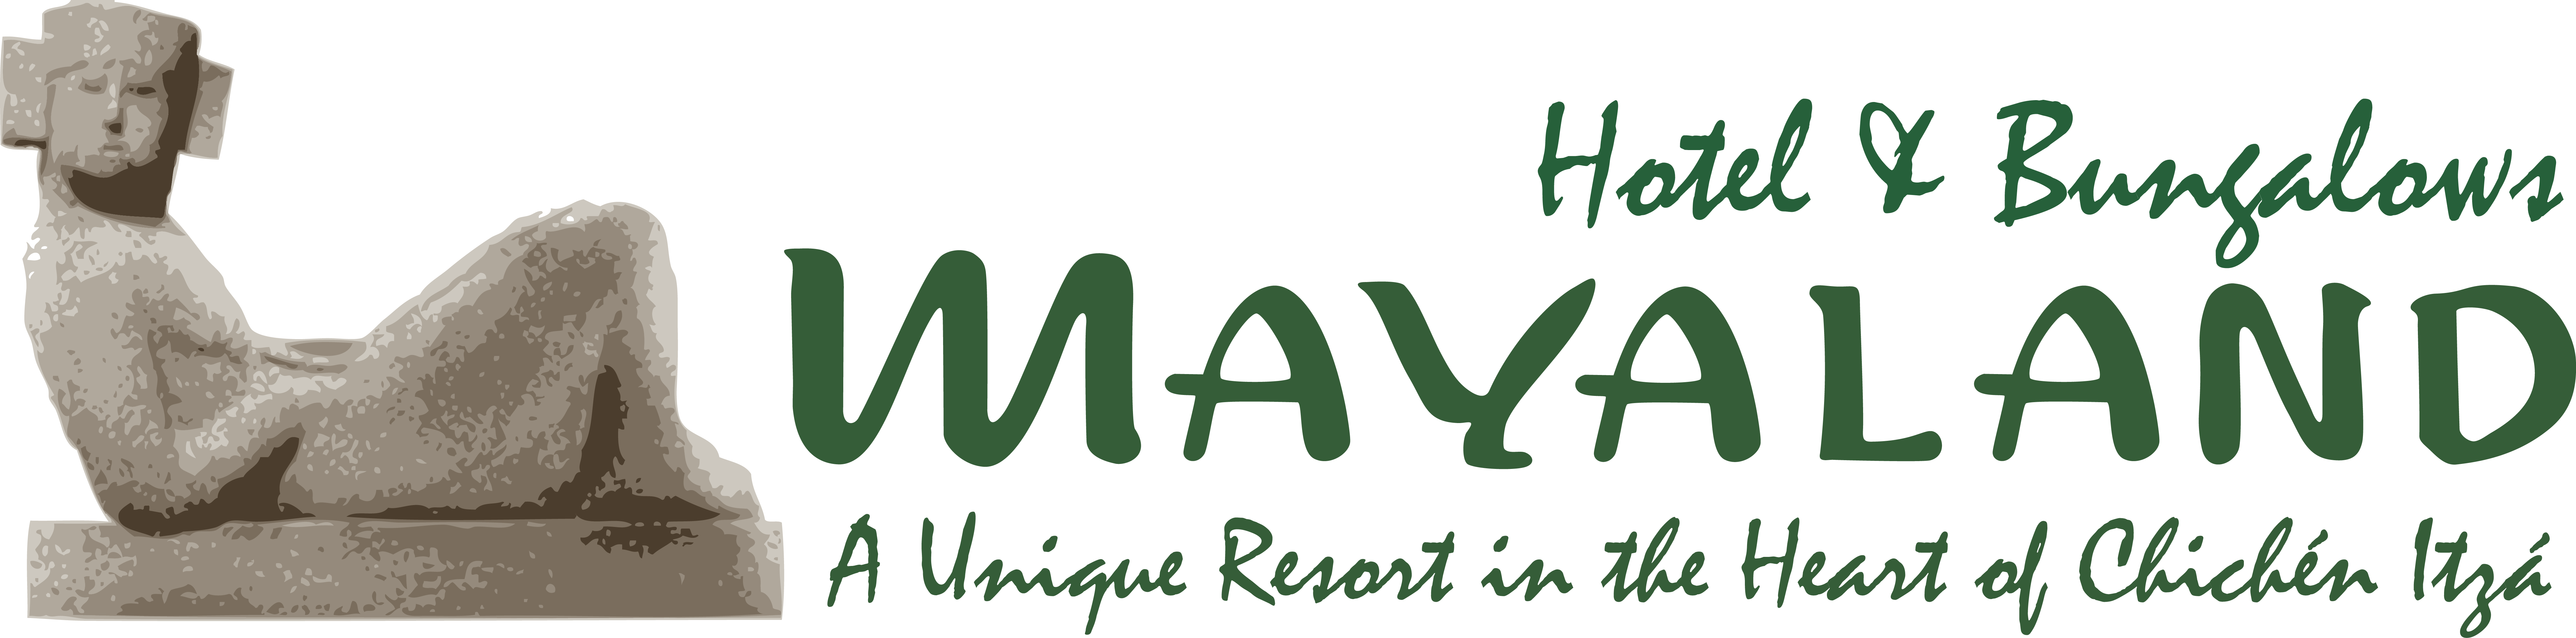 
Mayaland Hotel & Bungalows
   in Chichen Itza